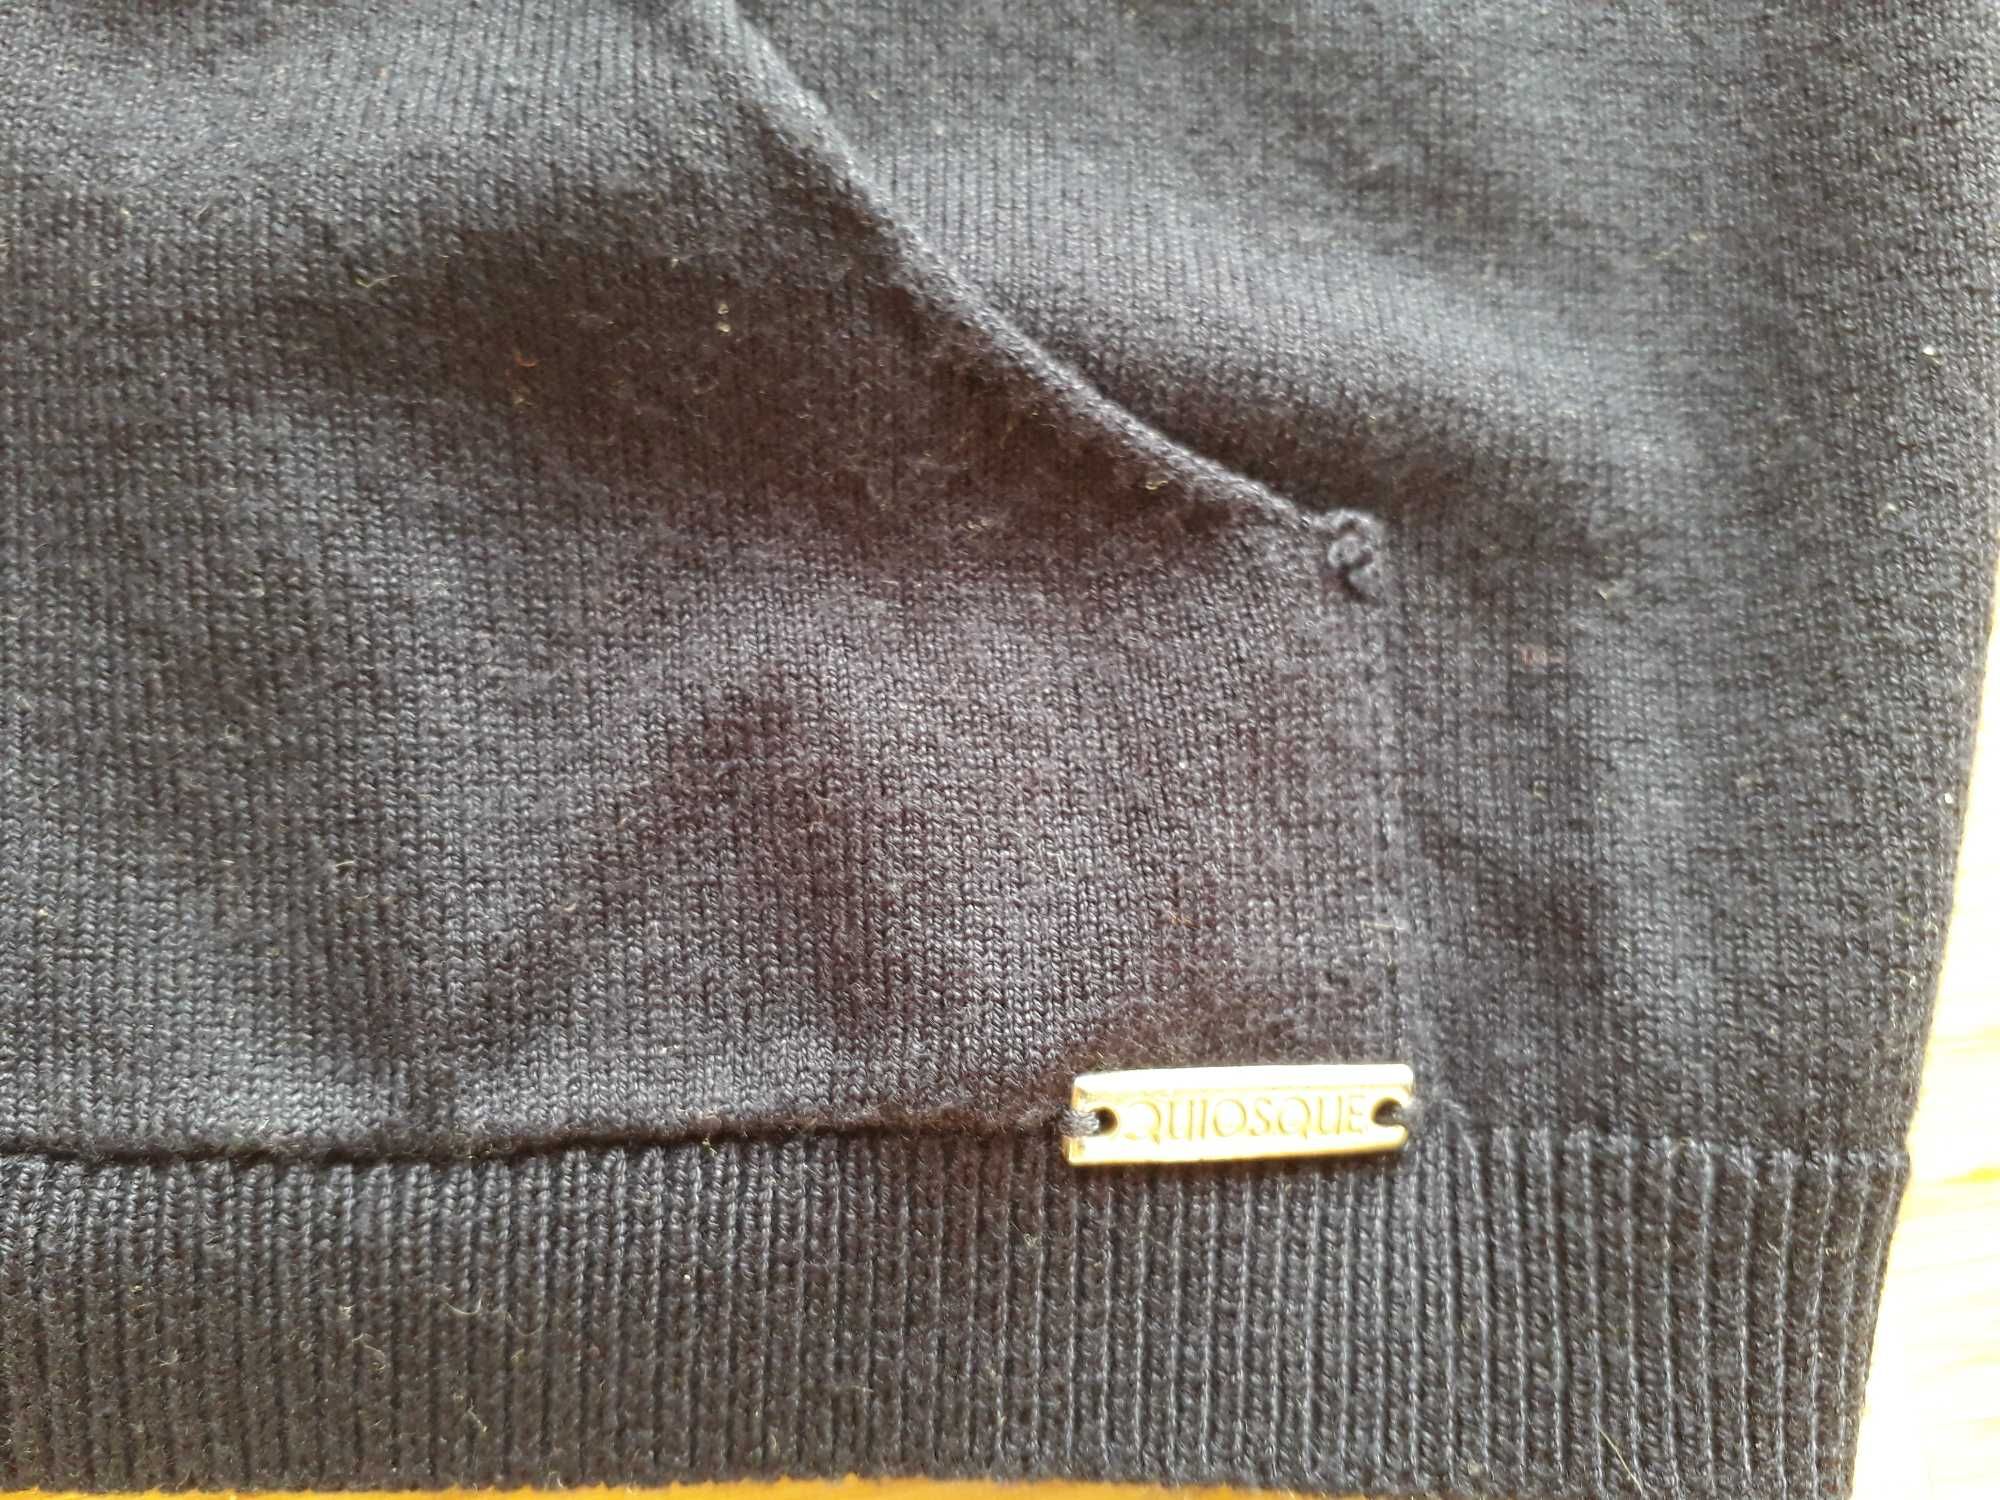 Narzuta-sweter z kapuzą QUIOSQUE, rozmiar 40, popielaty